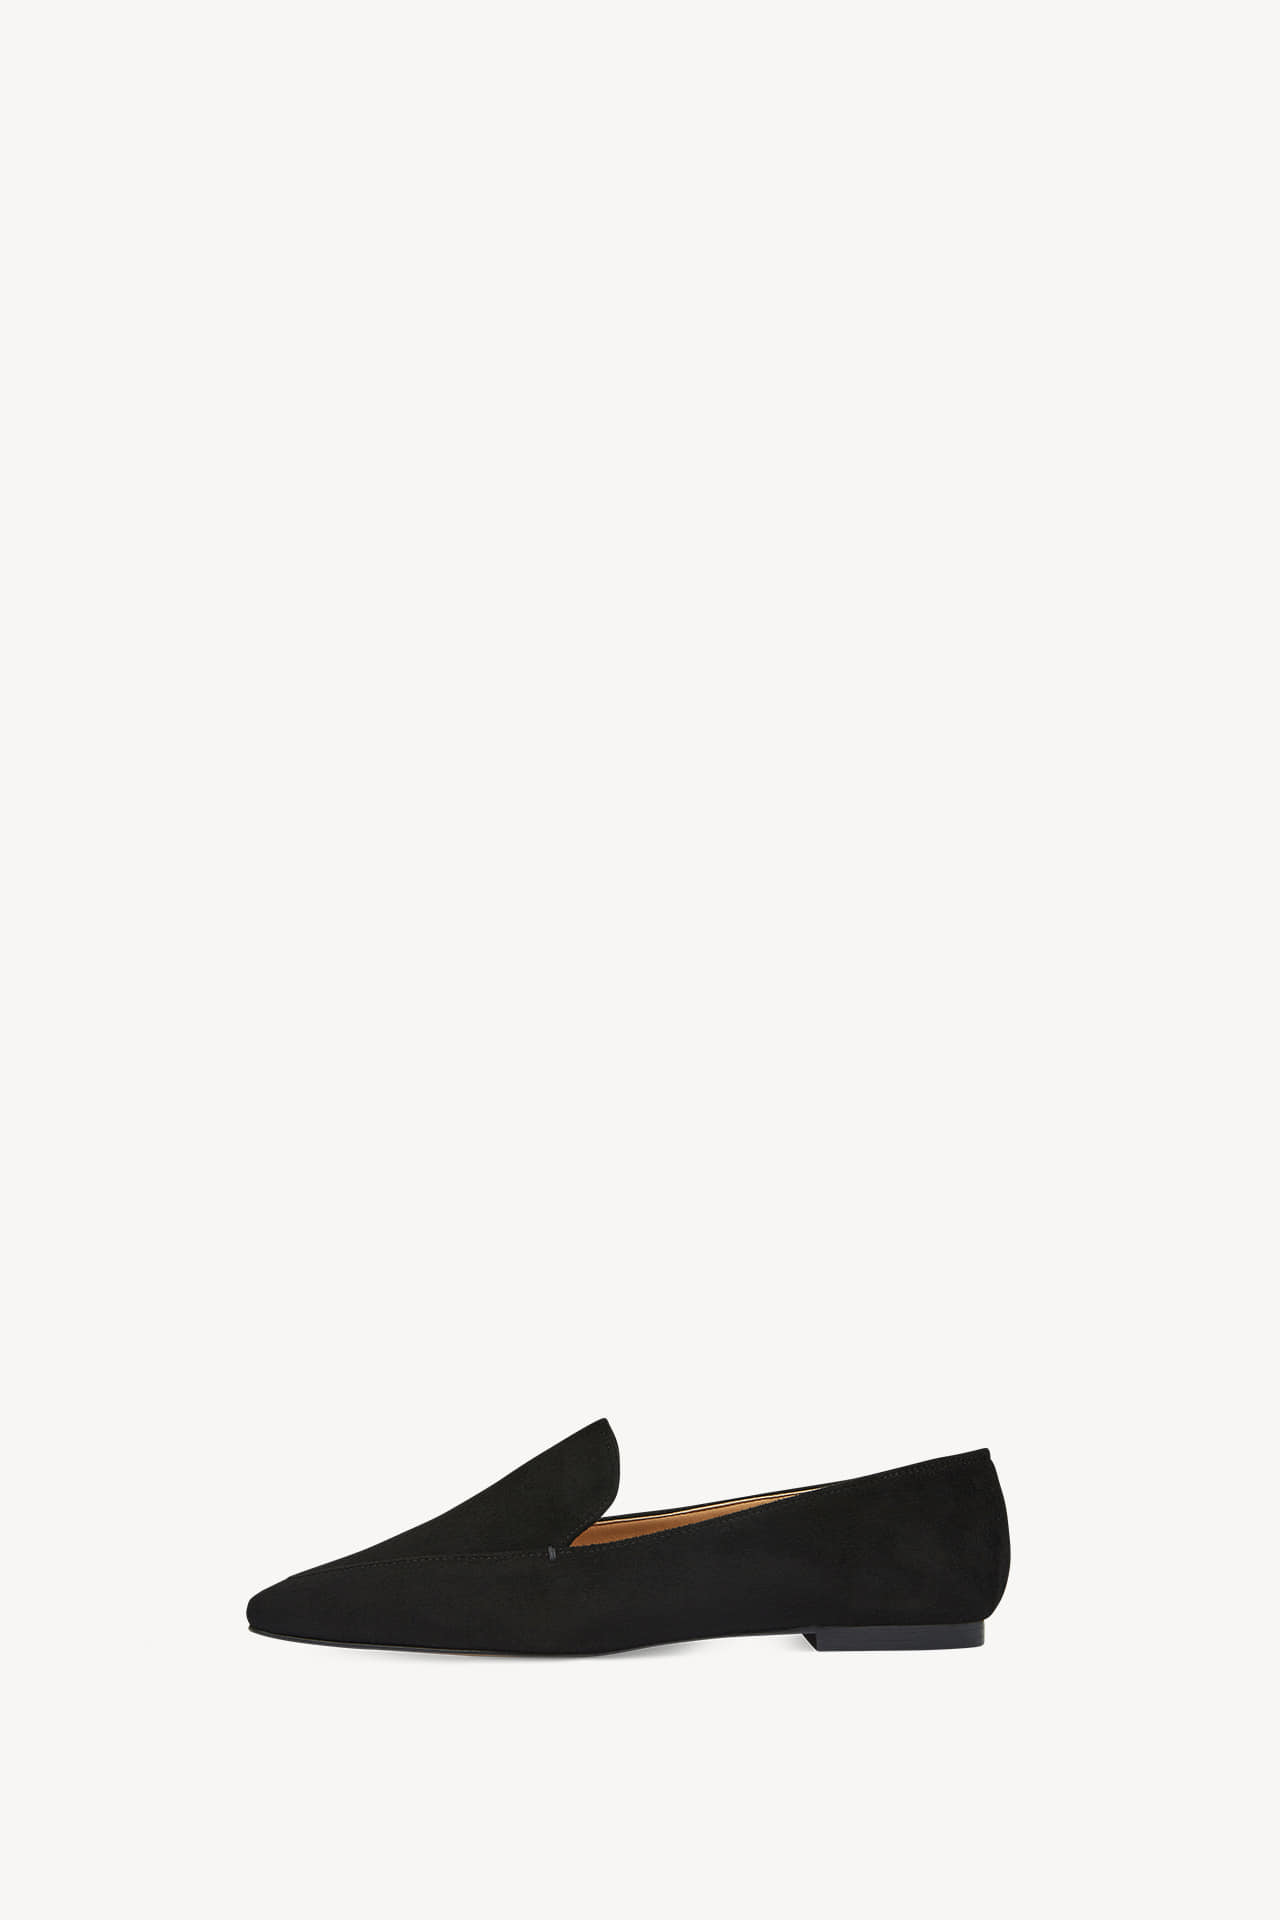 [鞋子] 女性乐福鞋 - 黑色